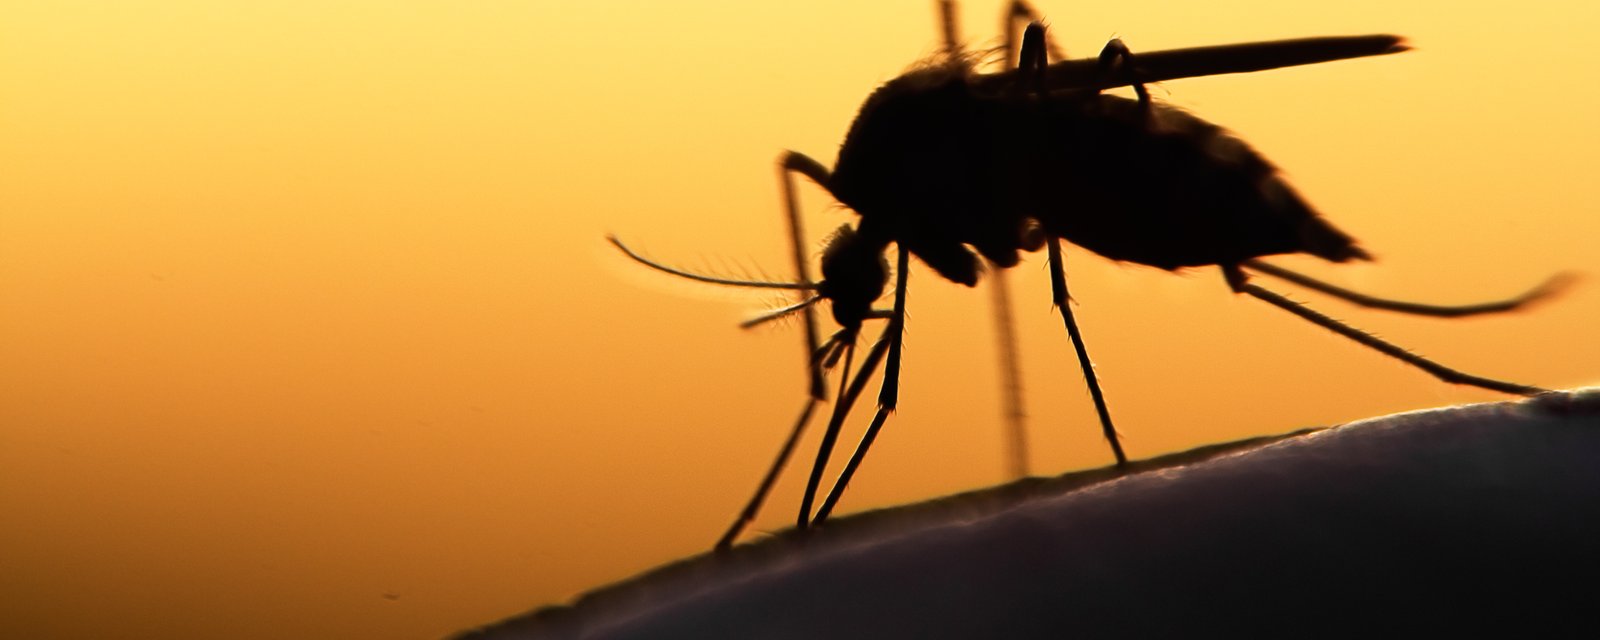 Les experts s'attendent à moins d'insectes et de moustiques cet été.